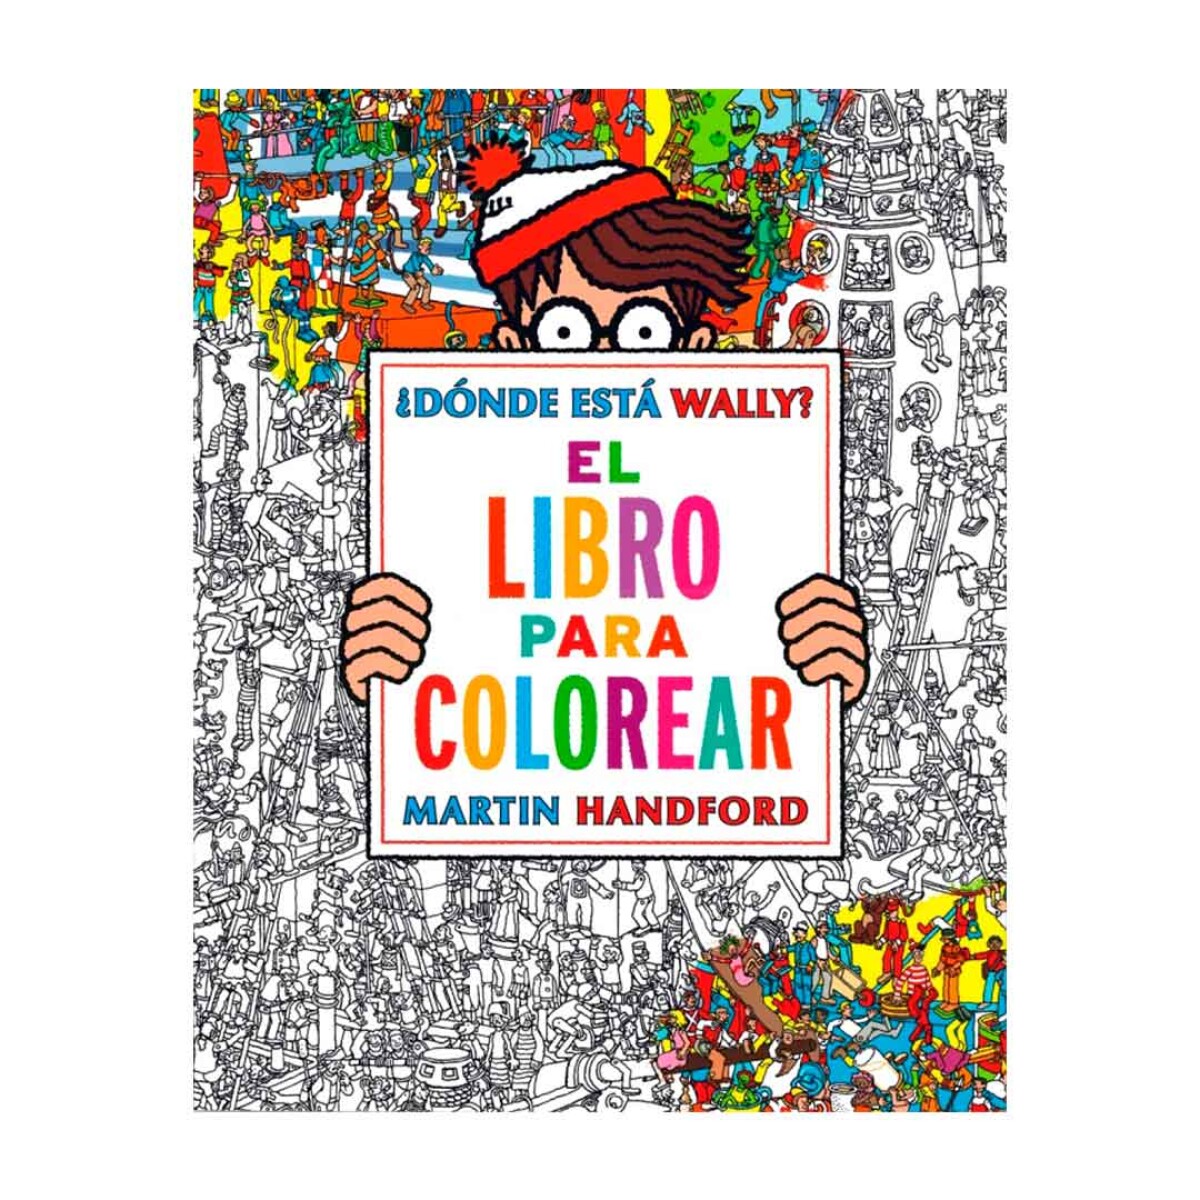 Libro para colorear ¿Donde está Wally? by Martin Handford - 001 